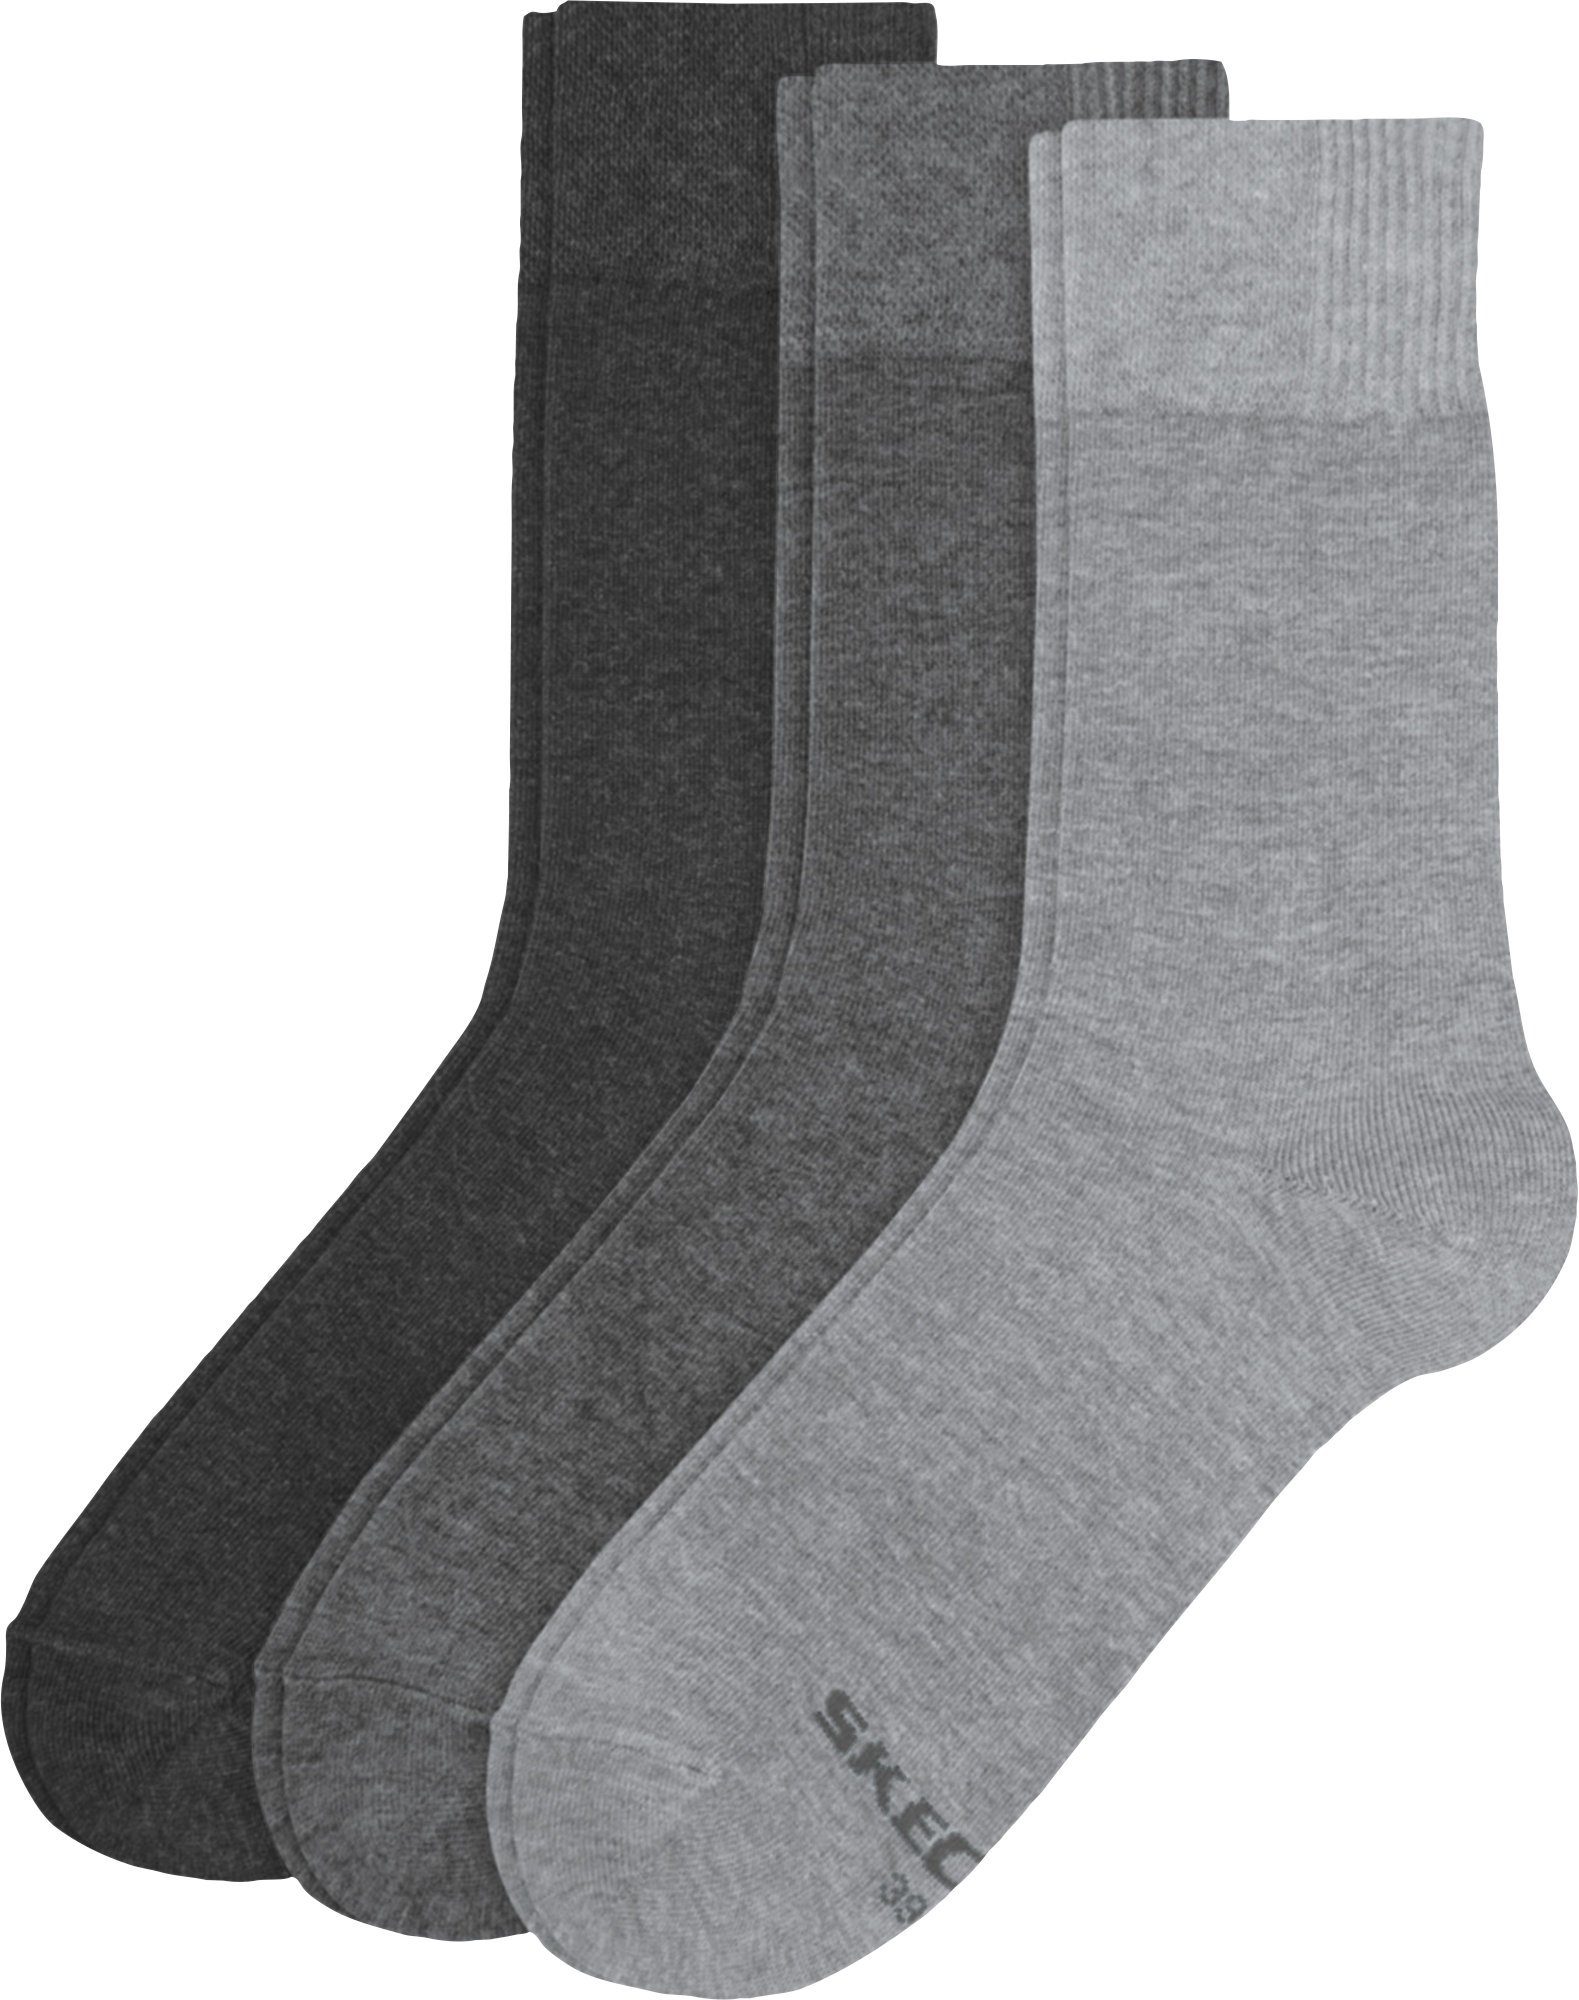 Socken Herren-Socken grau Uni Paar 3 Skechers